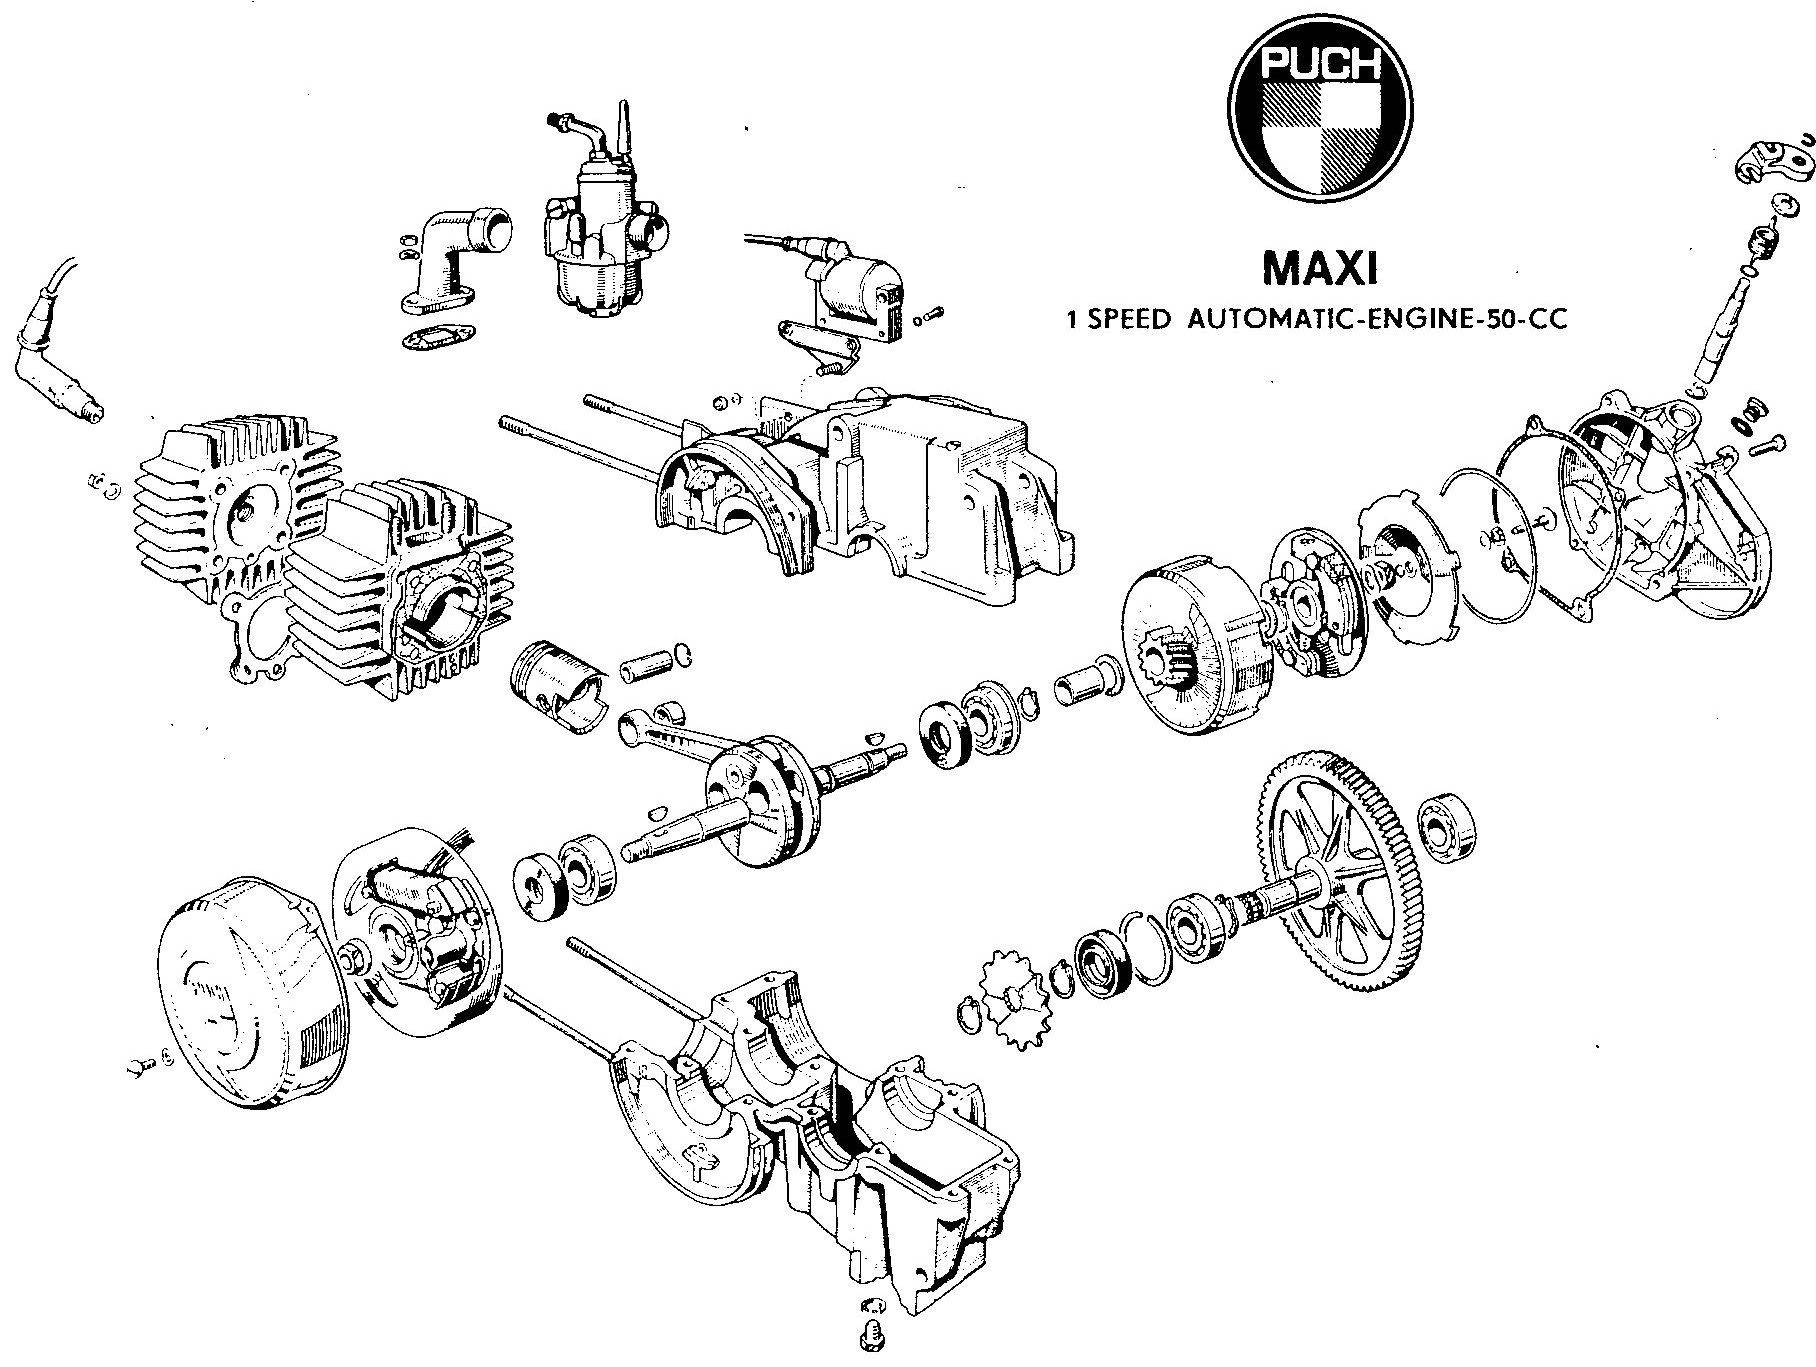 Vespa Engine Diagram Handy Diagram Of the E50 Puch Engine Mopeds • Lil Chopz • Of Vespa Engine Diagram